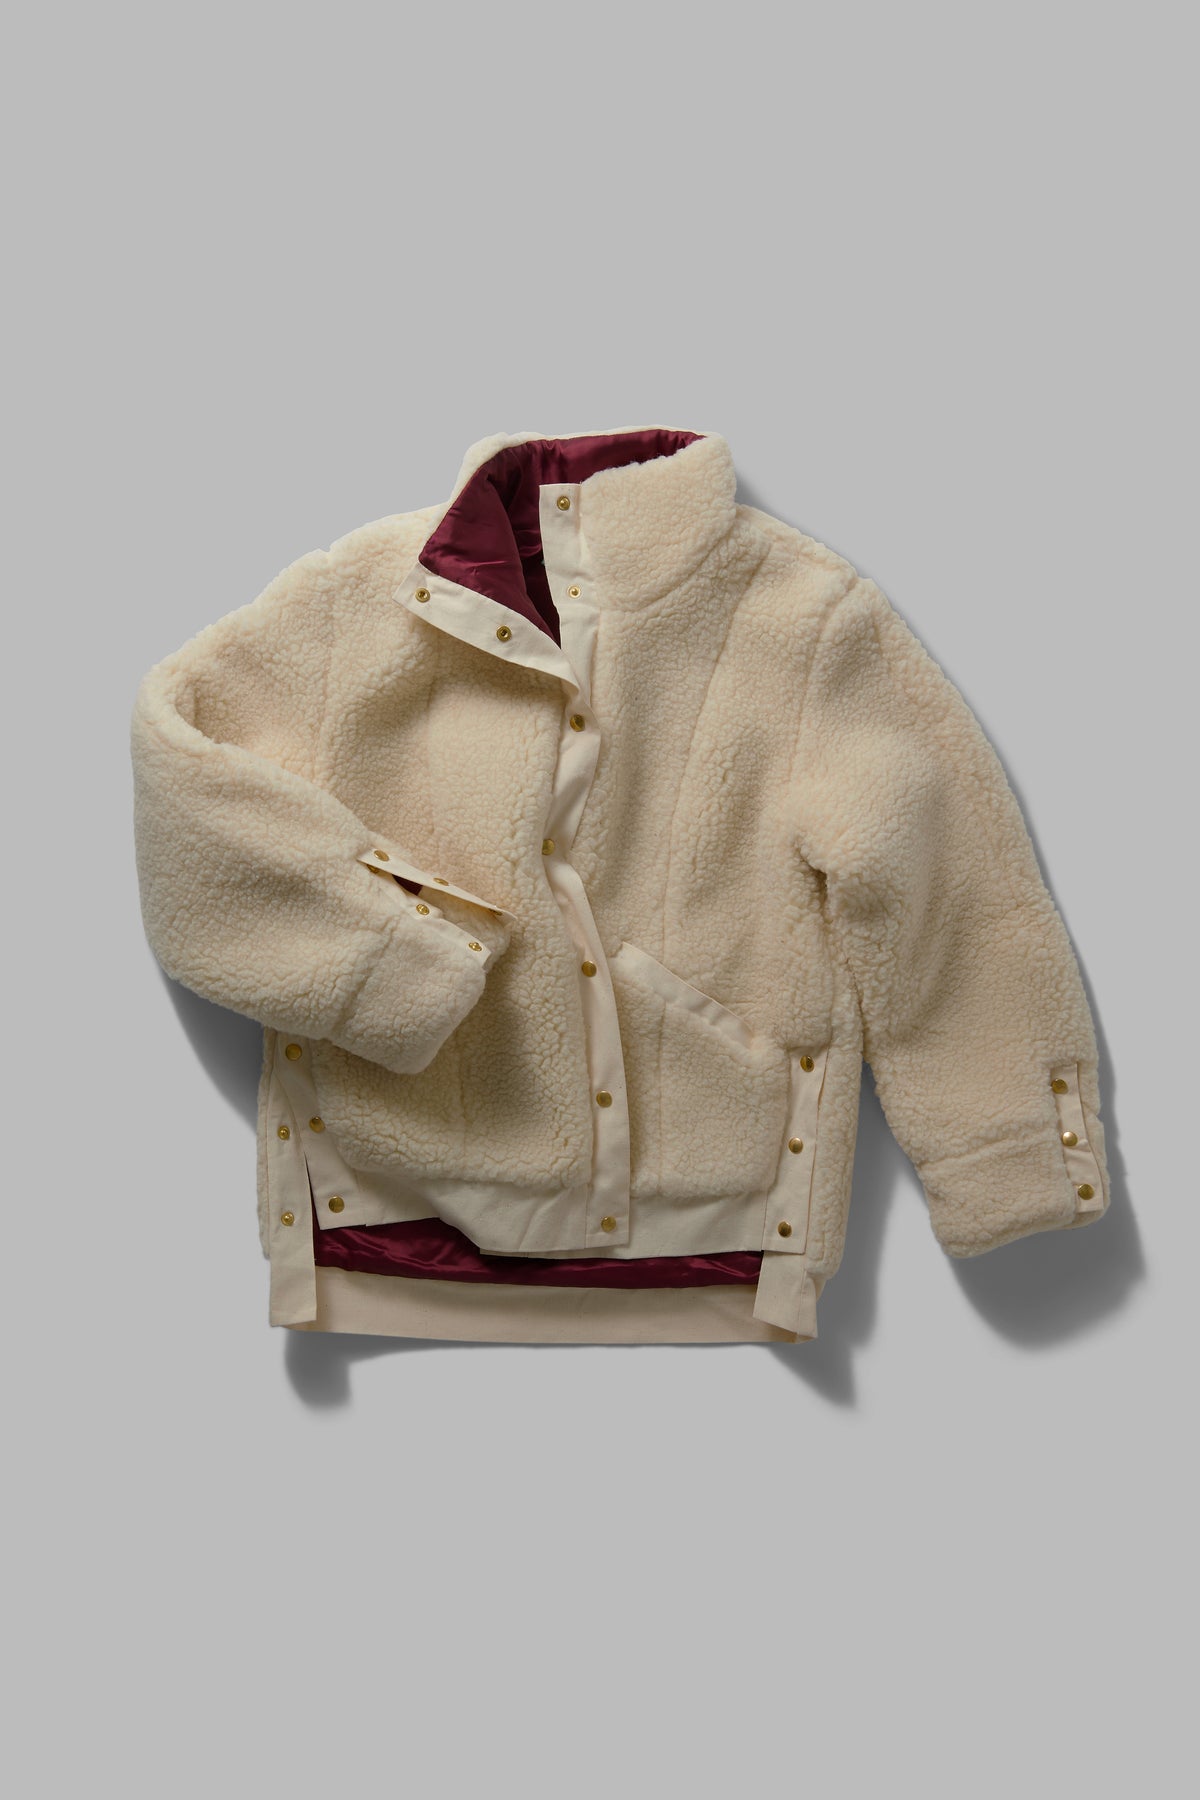 Idol jacket in natural wool